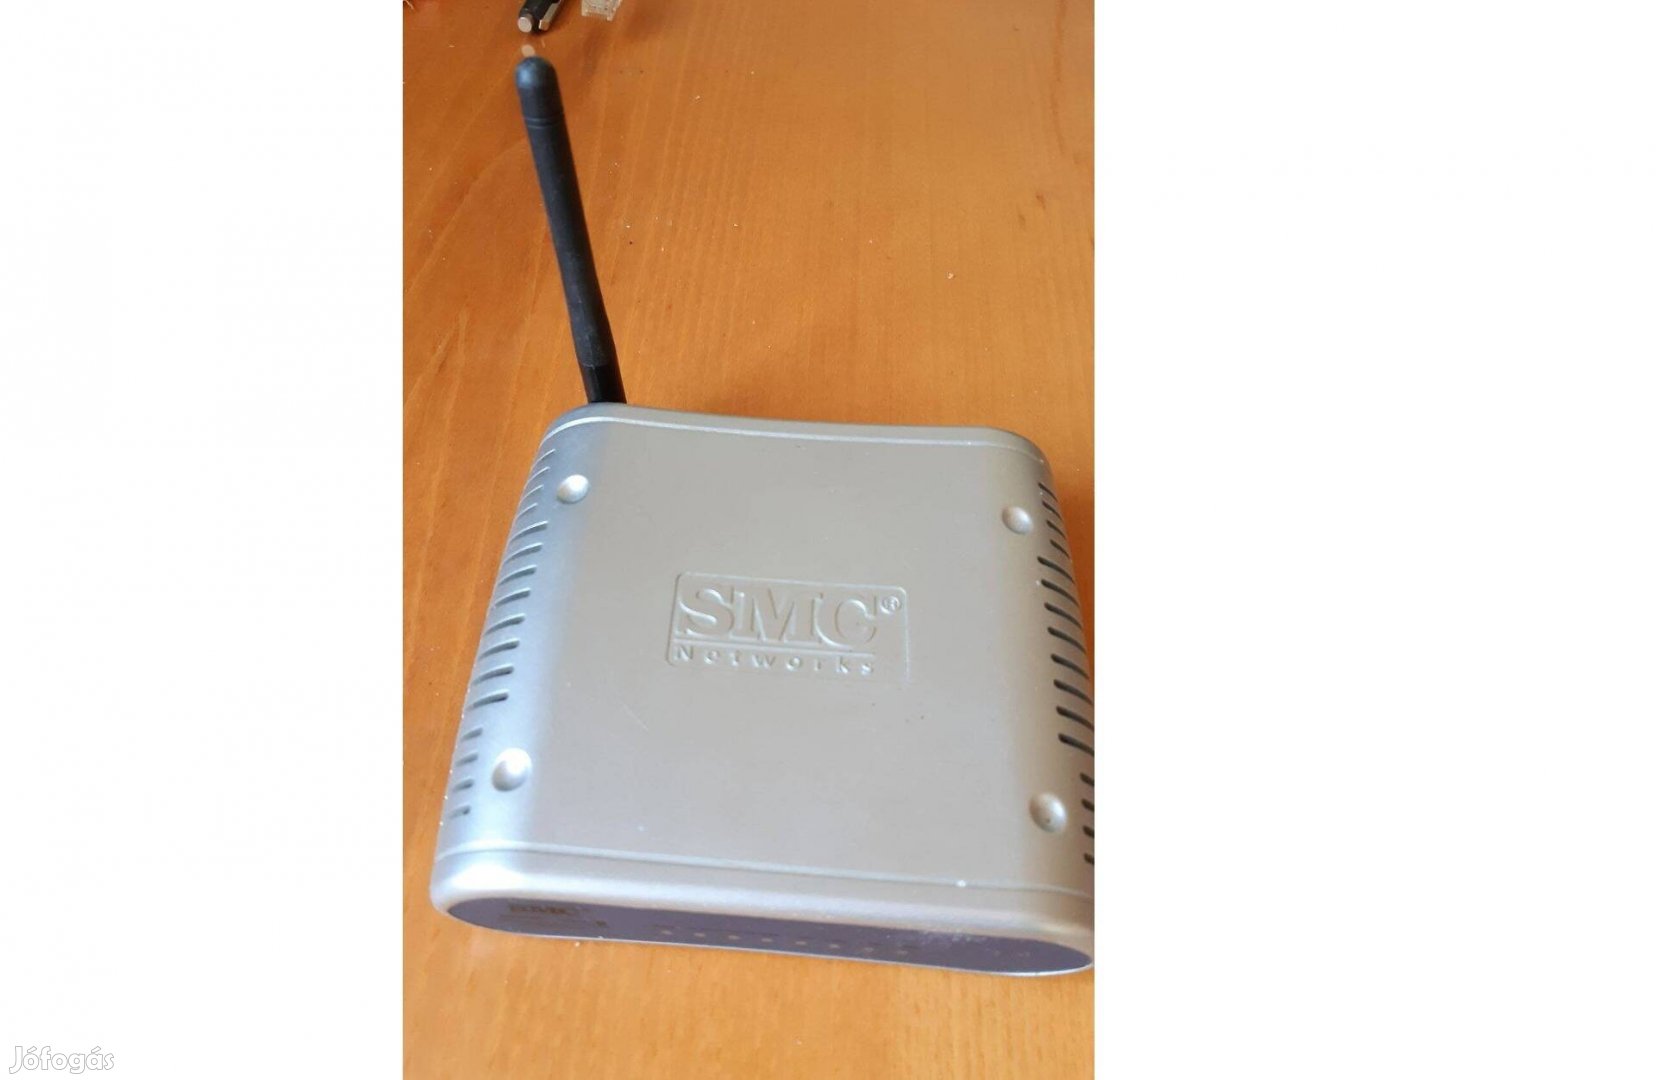 TL-WR740N + SMC Wifi wireless router, ás ATA egység internetes telefon